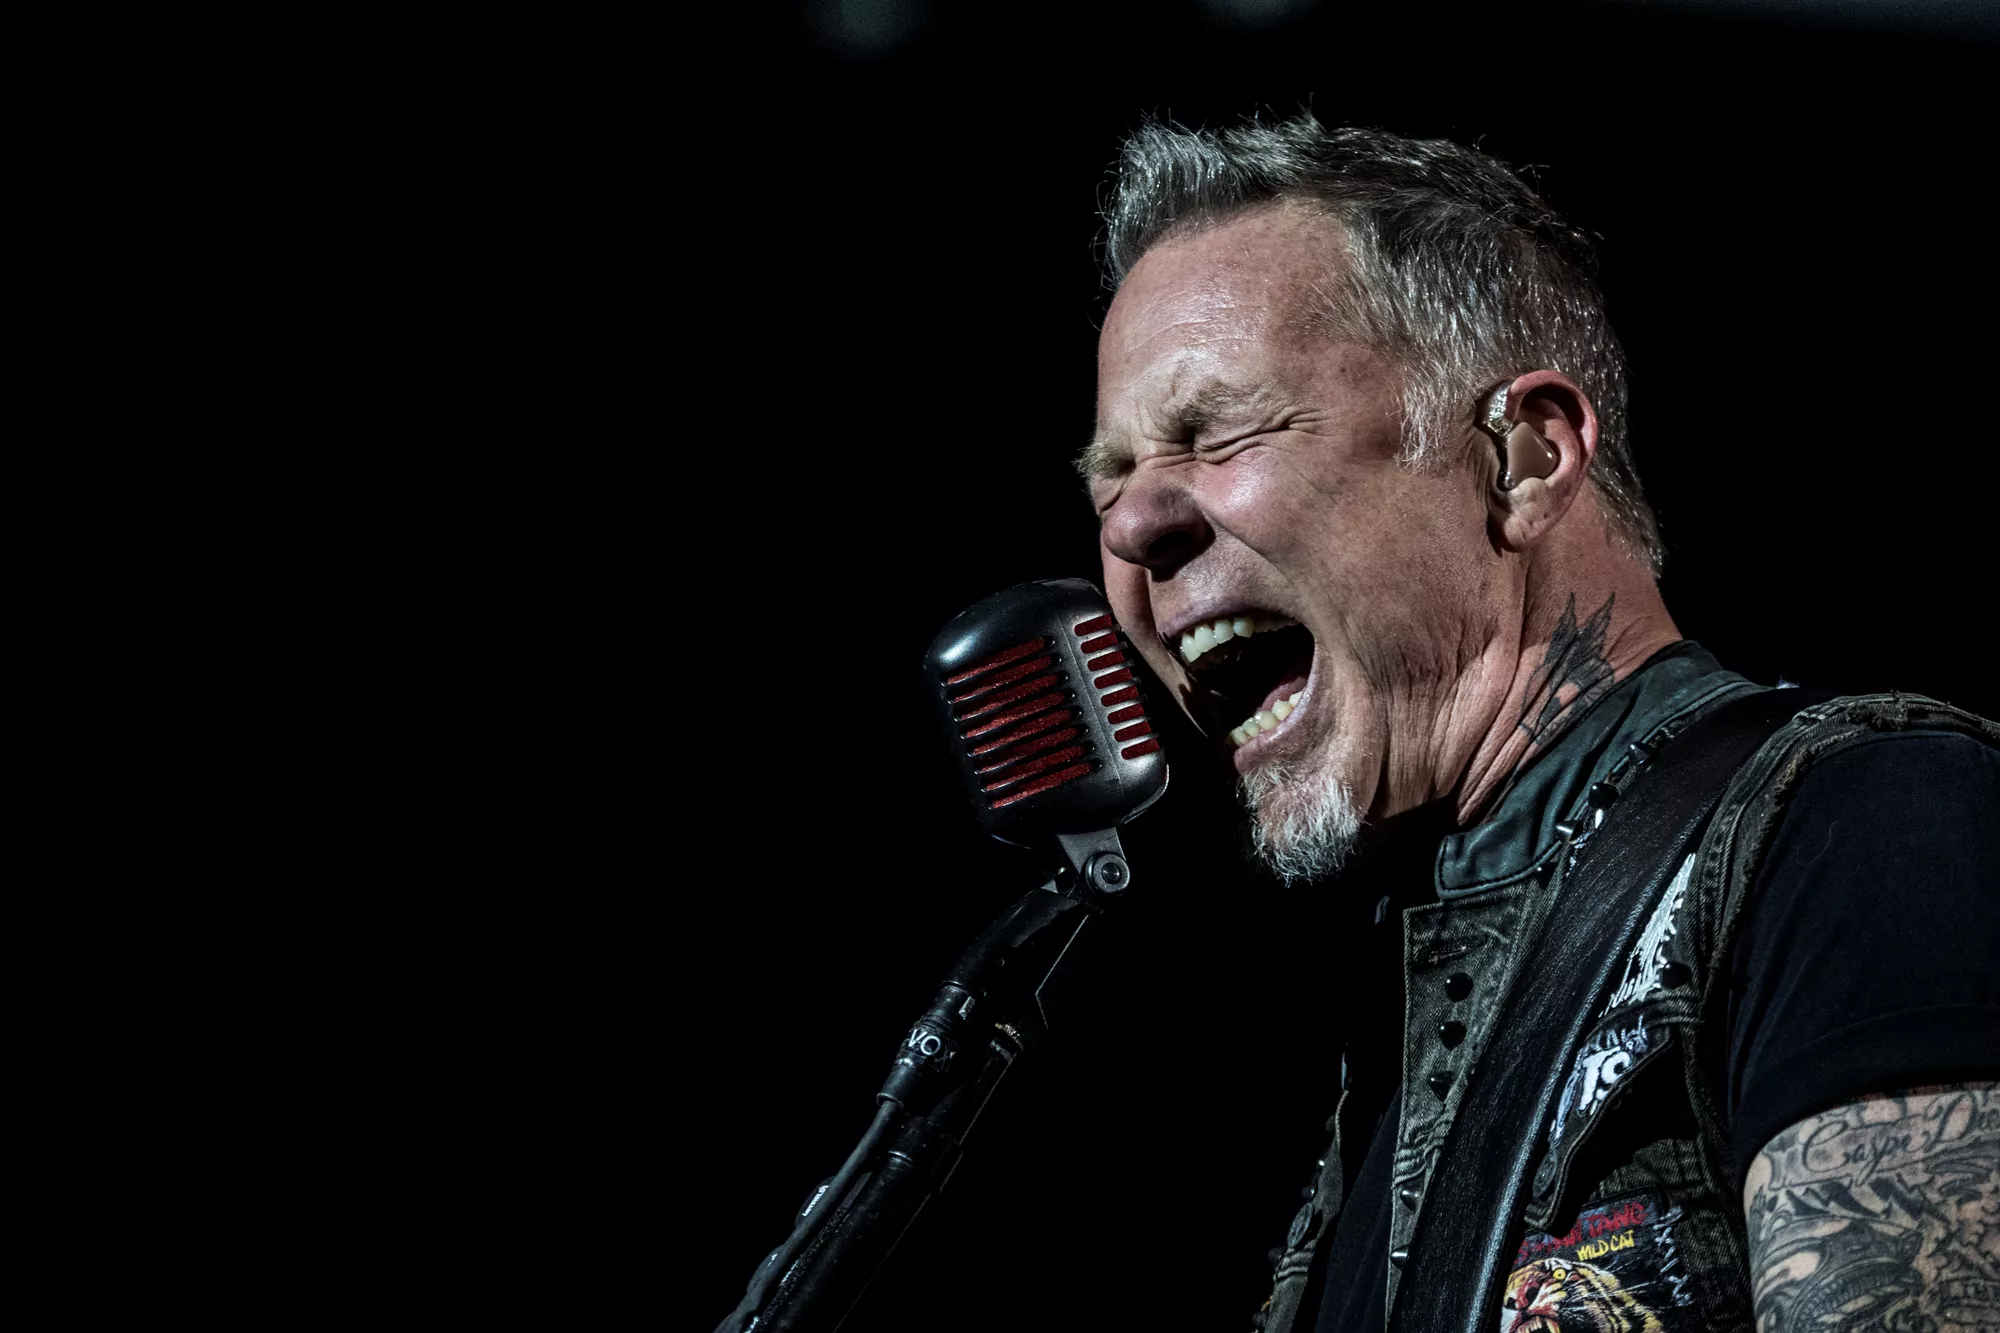 Metallica og Lady Gaga i Grammy-problemer: Se James Hetfield sparke til mikrofonstativ i vrede